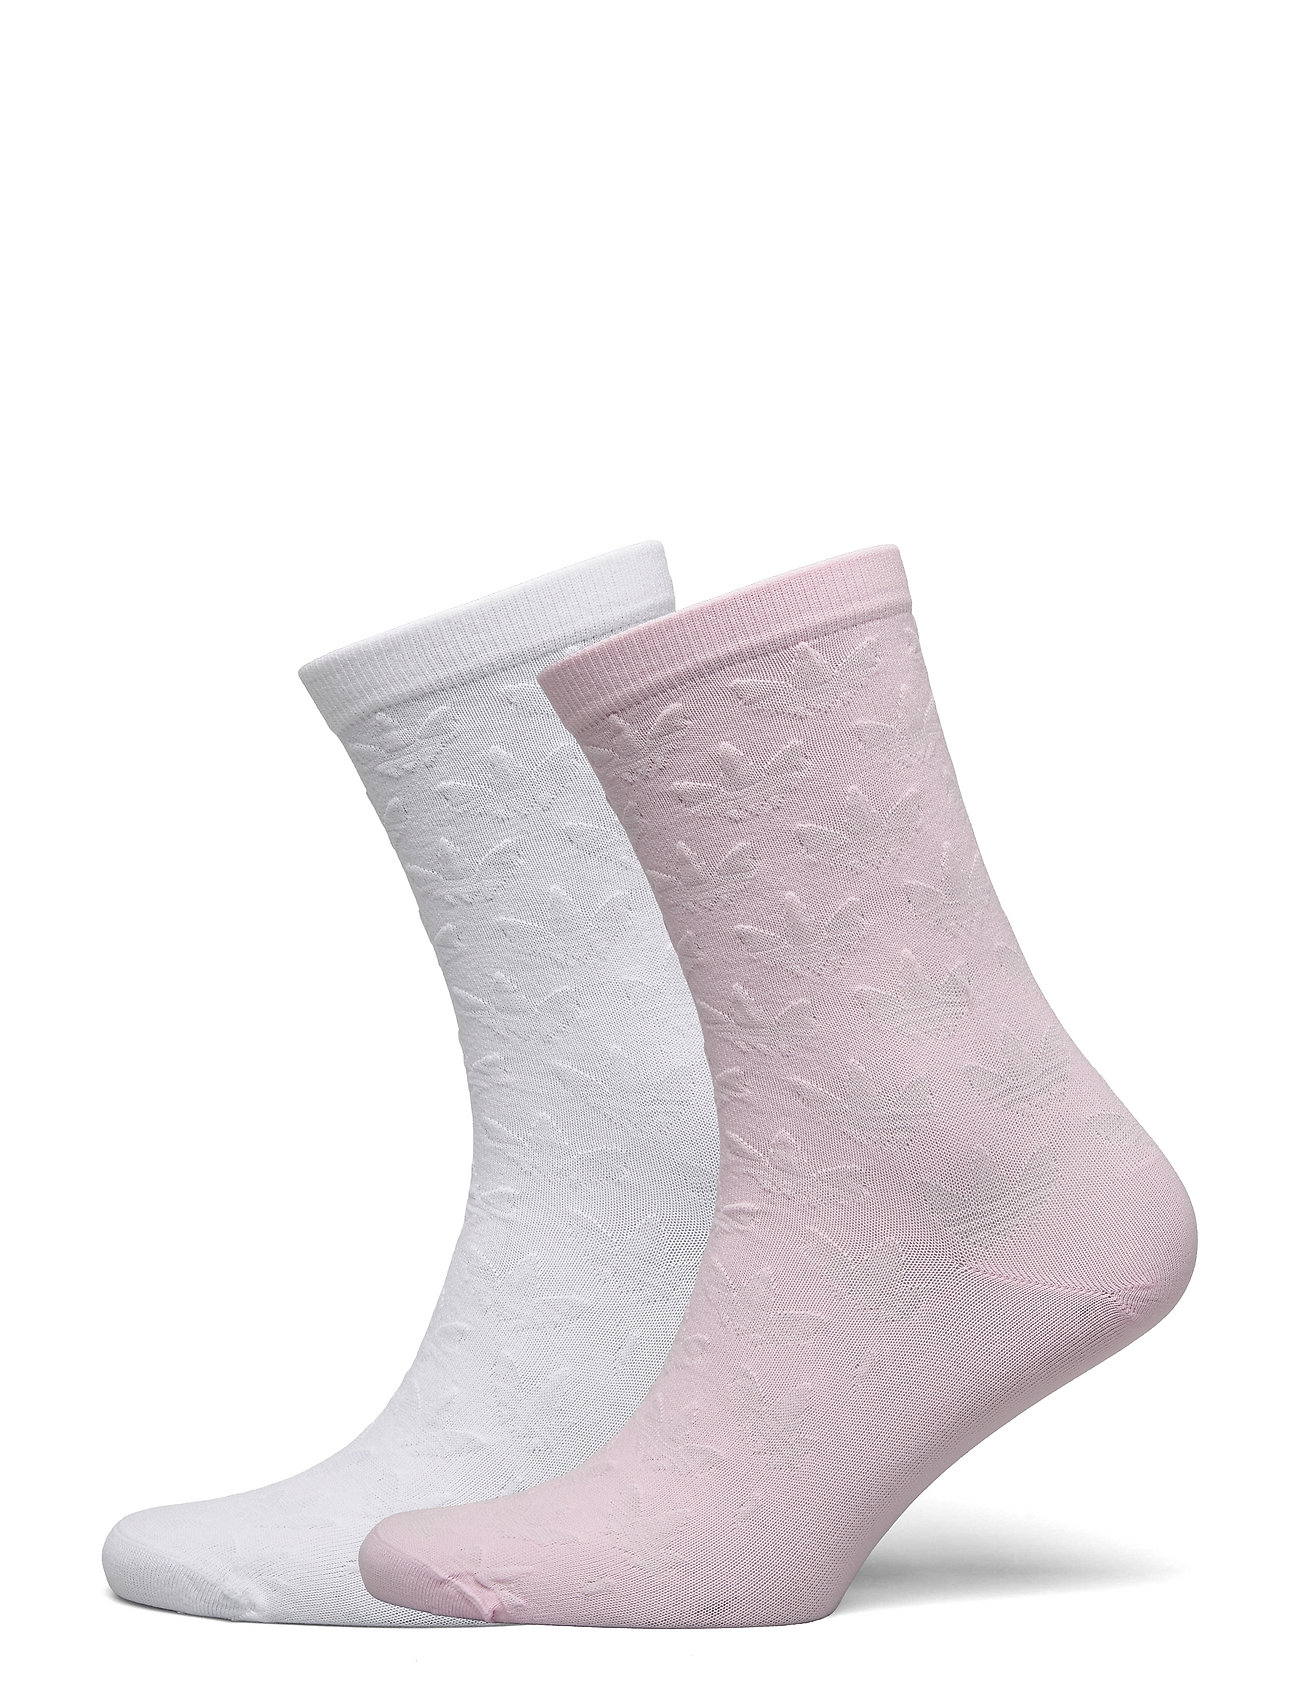 Jacquard Trefoil Crew Socks 2 Pairs Lingerie Socks Regular Socks Valkoinen Adidas Originals, adidas Originals